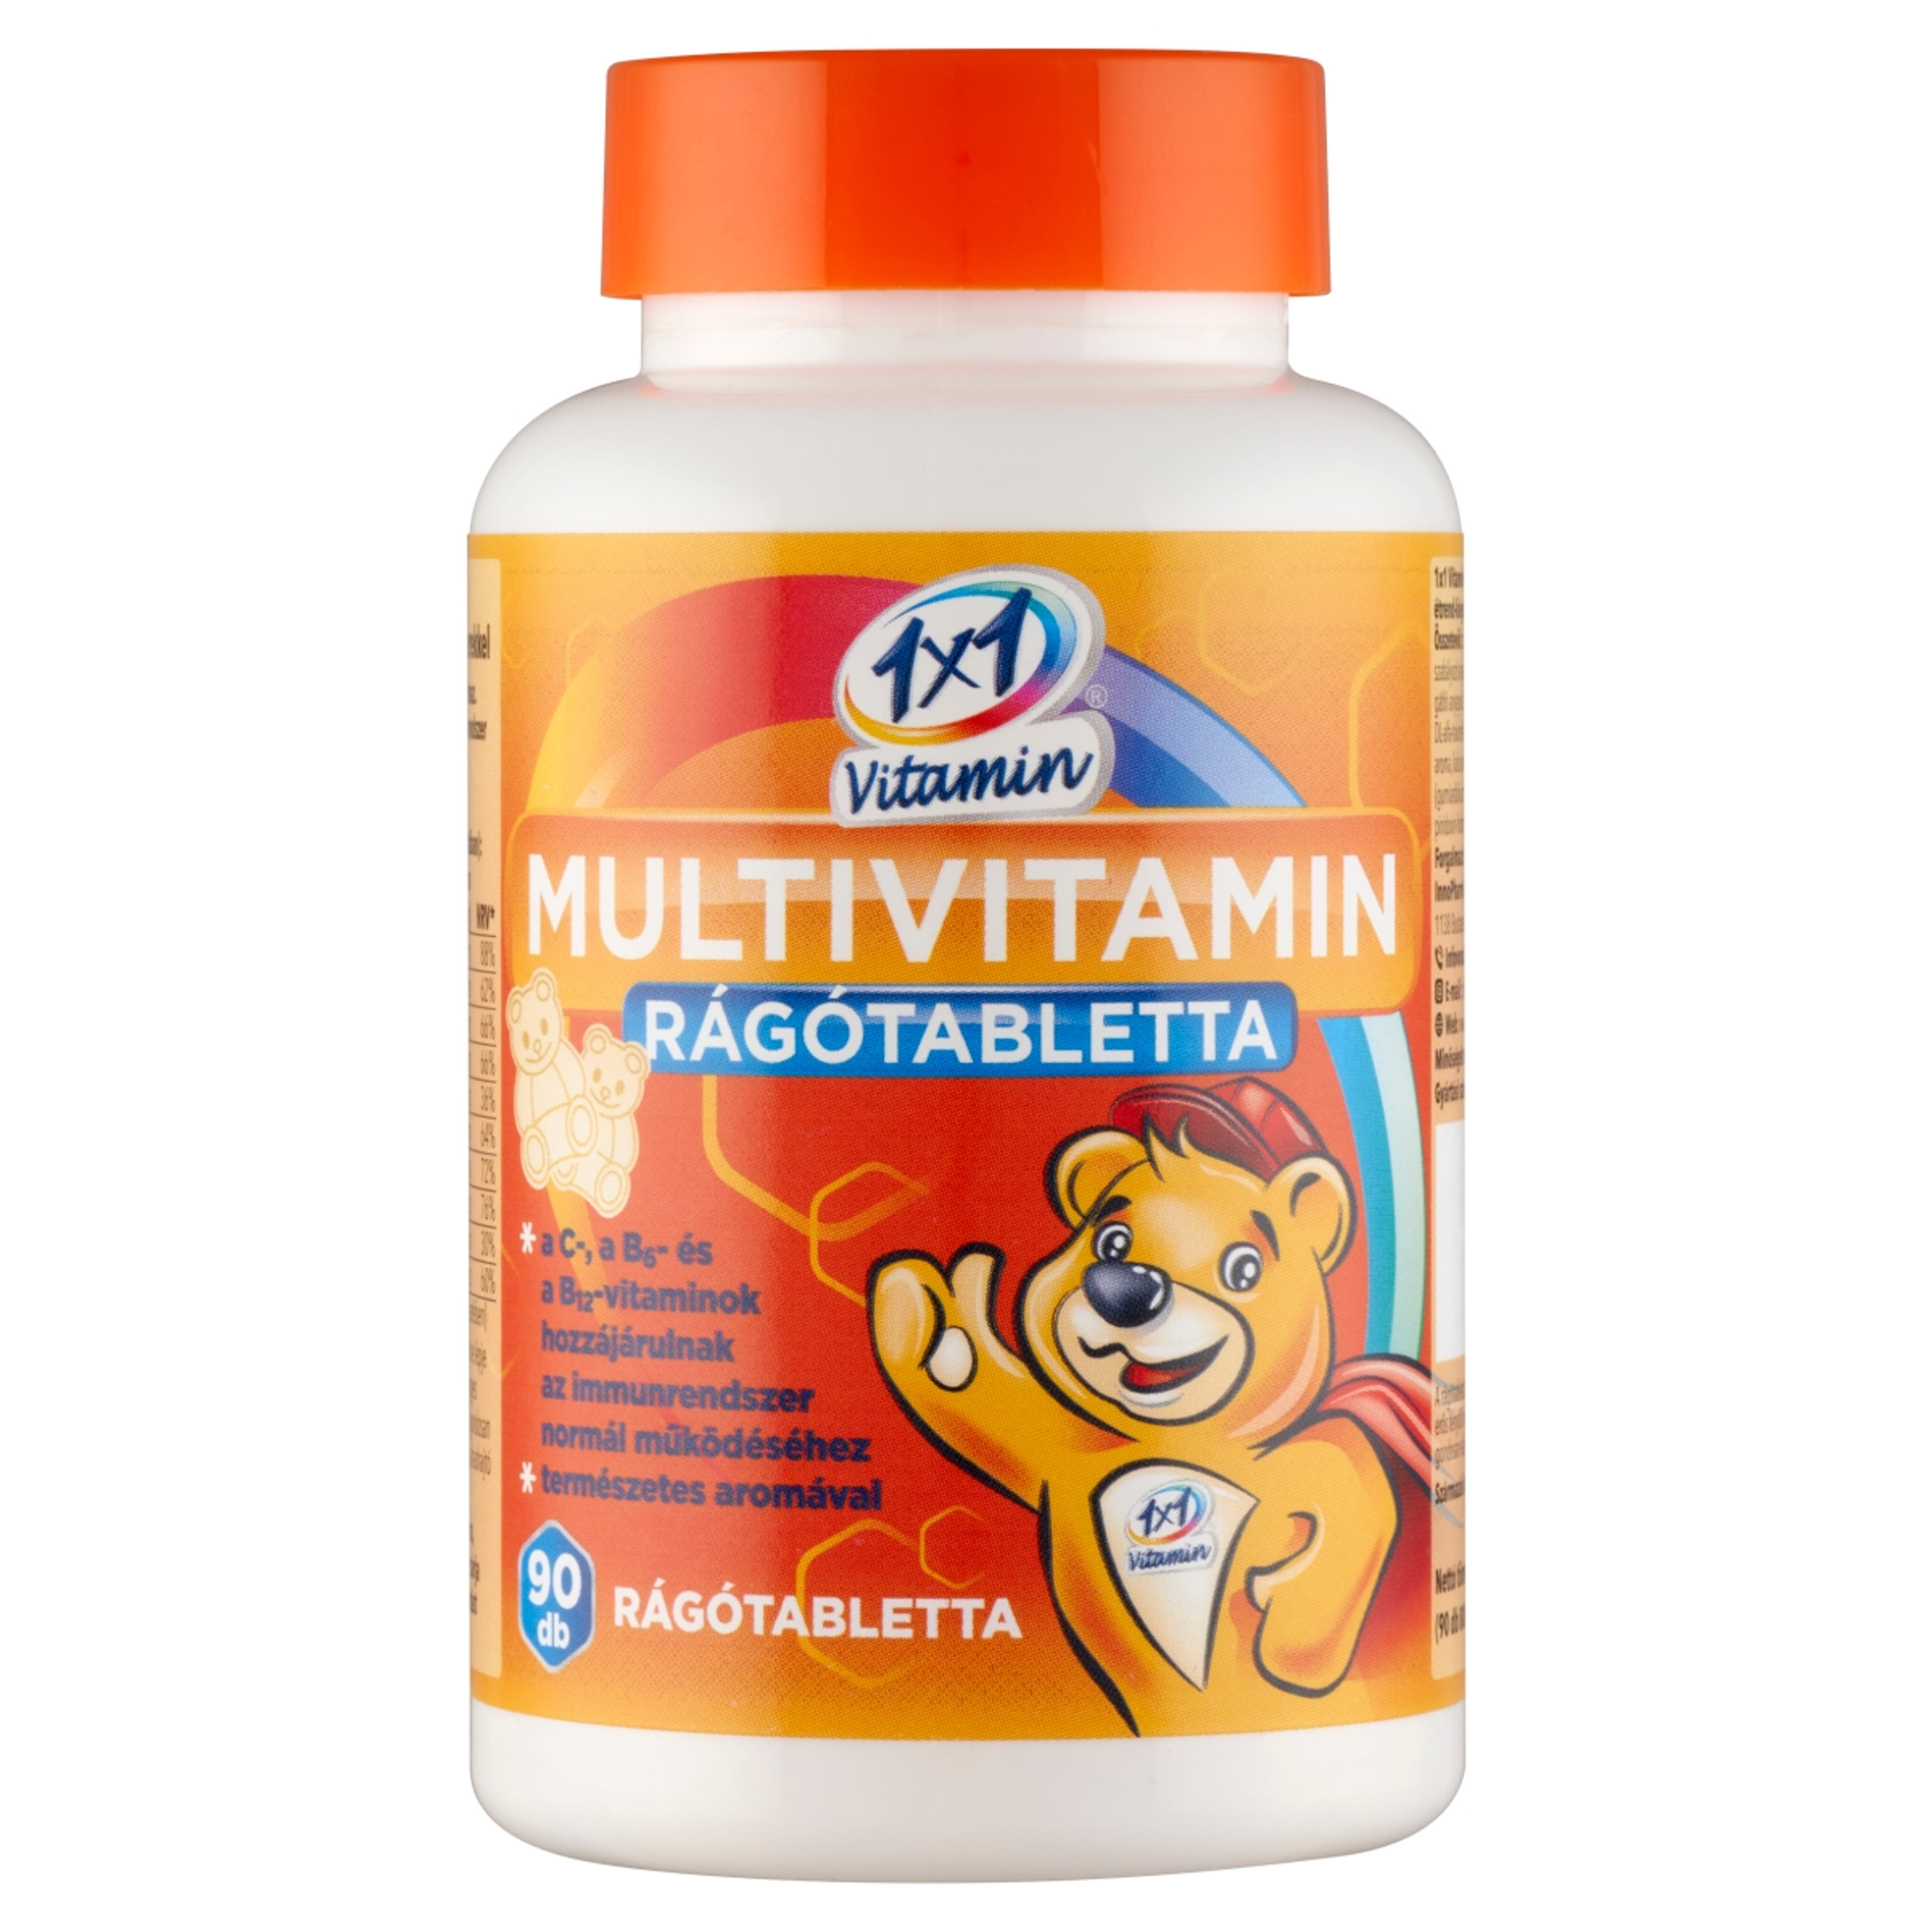 1x1 Vitamin Multivitamin rágótabletta macis - 90 db